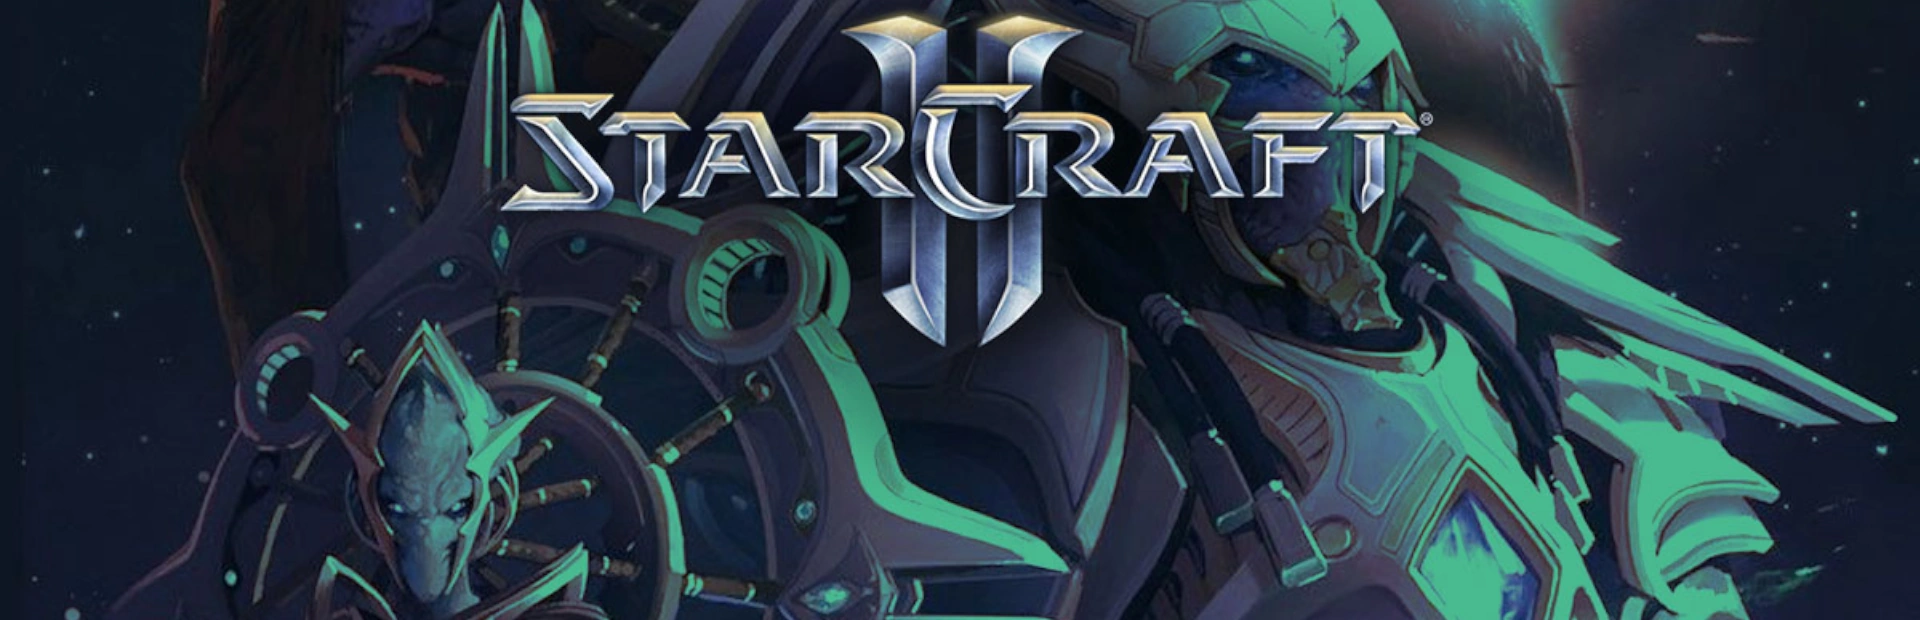 دانلود بازی Starcraft 2 برای کامپیوتر بدون کرک | گیمباتو